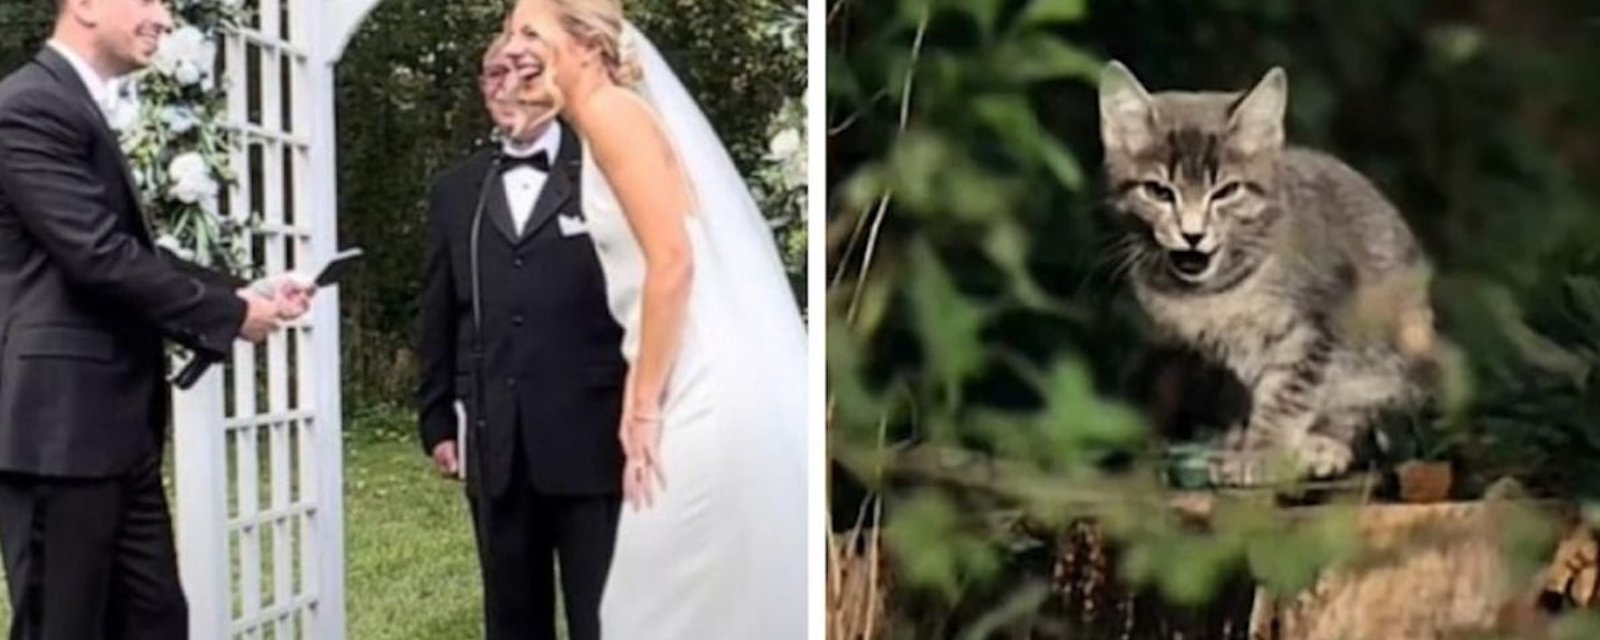 Vidéo: Un chaton s’invite à un mariage et fait rire toute l’assemblée